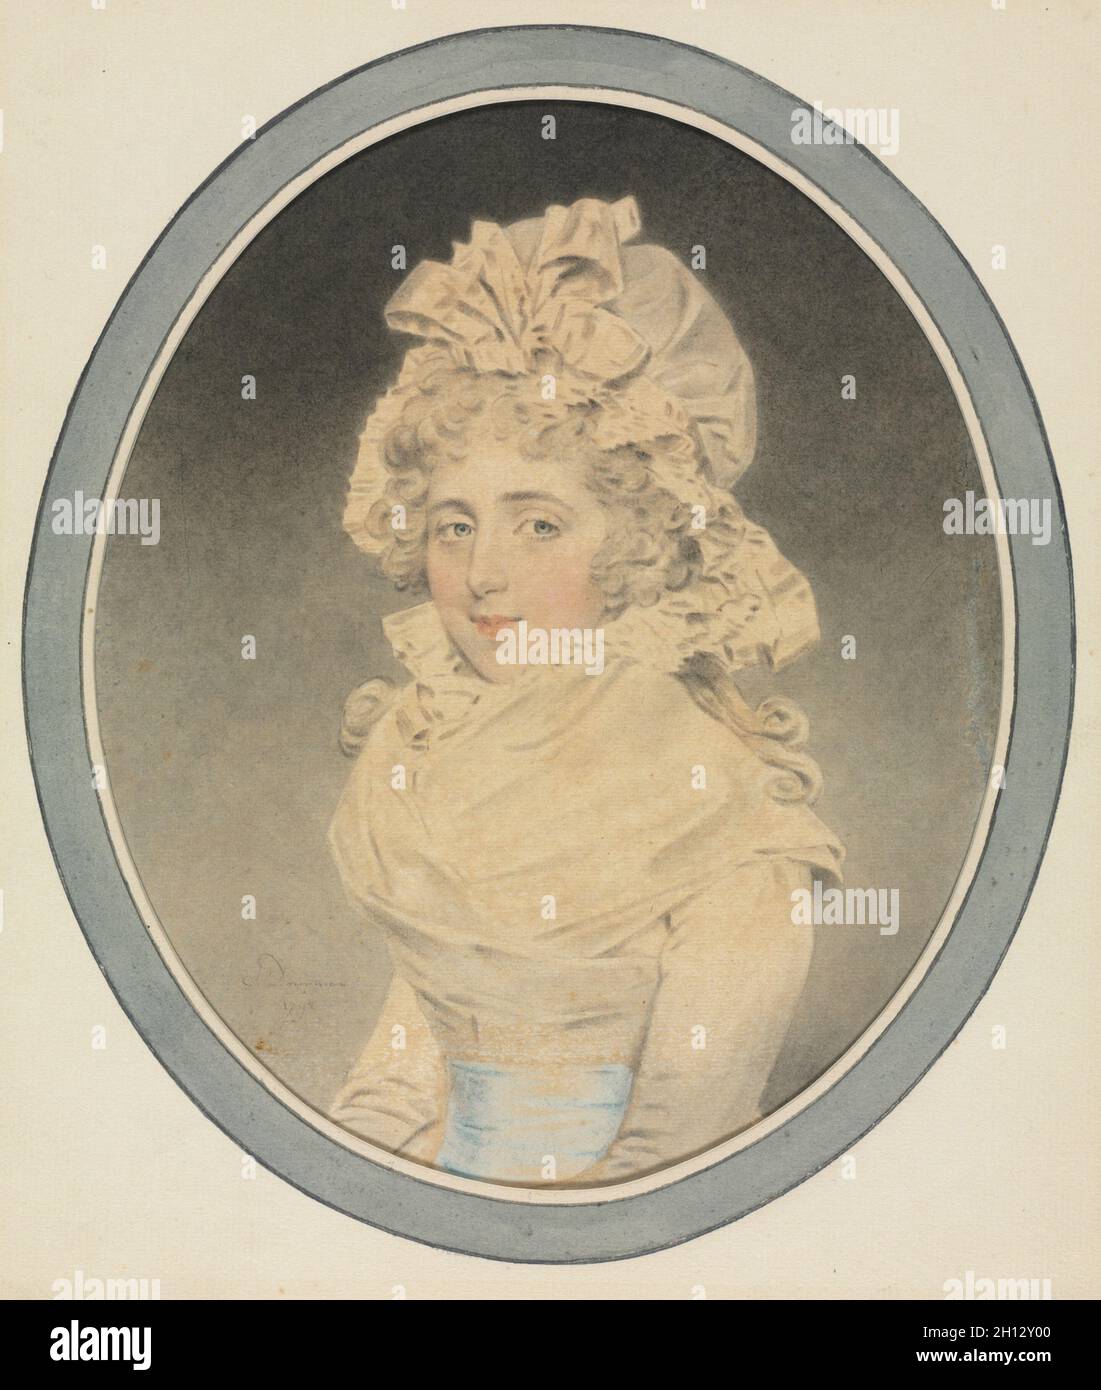 Lady Caroline Wrottesley, 1792. John Downman (British, 1750-1824). Pinsel und schwarze Kreide waschen und Aquarell mit blauen Pastellfarben; Blatt: 21,9 x 18,3 cm (8 5/8 x 7 3/16 in.); sekundäre Support: 24,6 x 20,6 cm (9 11/16 x 8 1/8 in.); Tertiärsektor: 24,9 x 21,1 cm (9 13/16 x 8 5/16 in.). Stockfoto